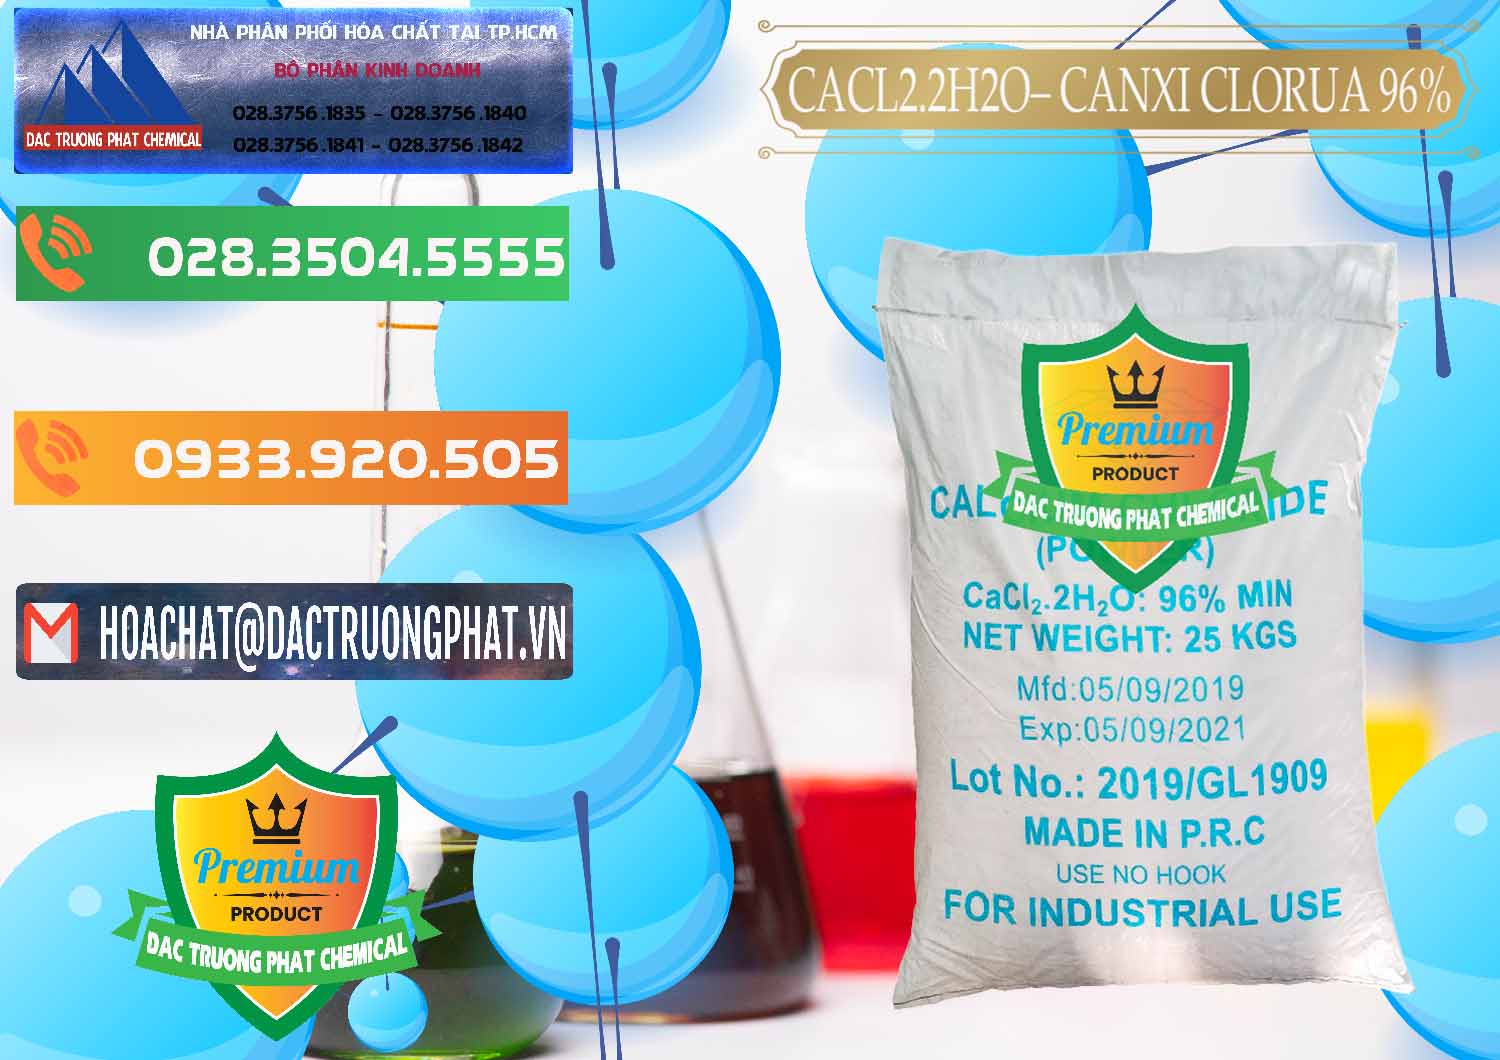 Chuyên cung ứng _ bán CaCl2 – Canxi Clorua 96% Logo Kim Cương Trung Quốc China - 0040 - Công ty chuyên cung ứng & phân phối hóa chất tại TP.HCM - hoachatxulynuoc.com.vn